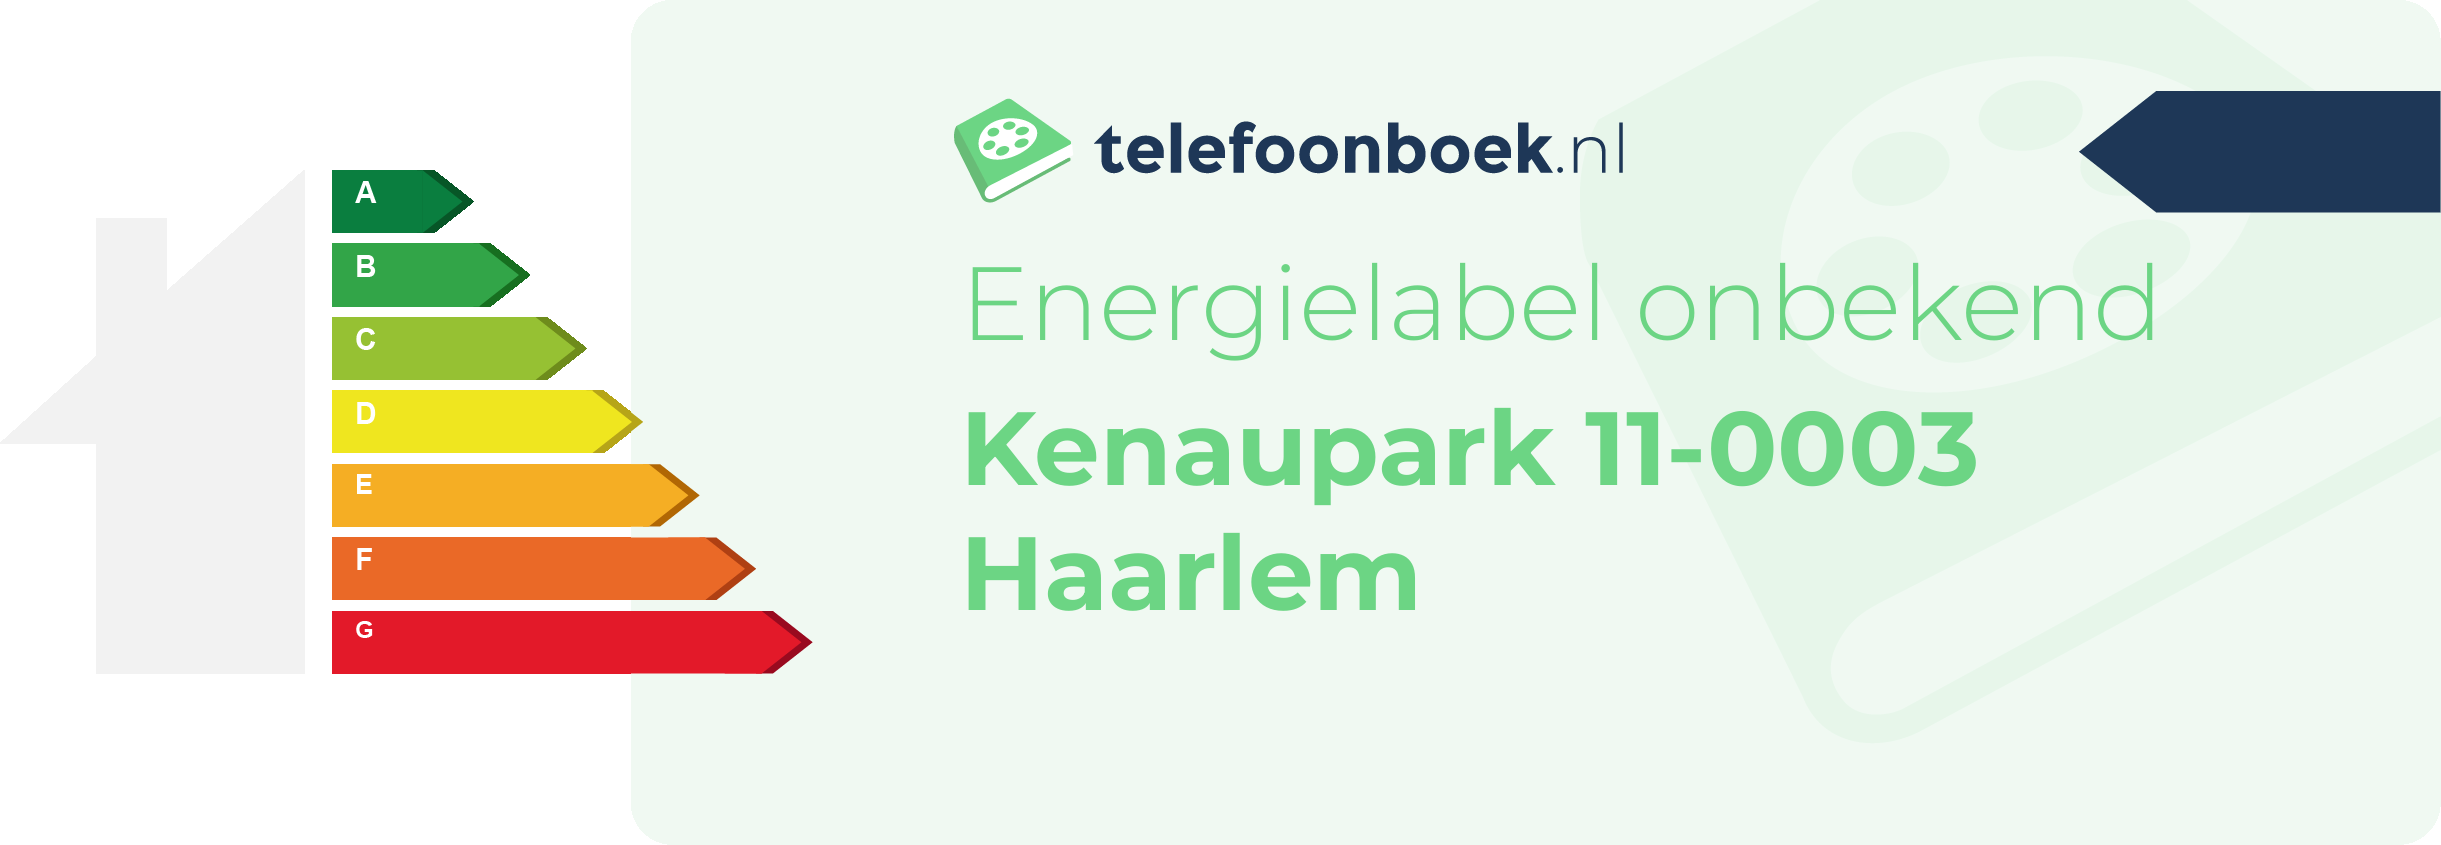 Energielabel Kenaupark 11-0003 Haarlem